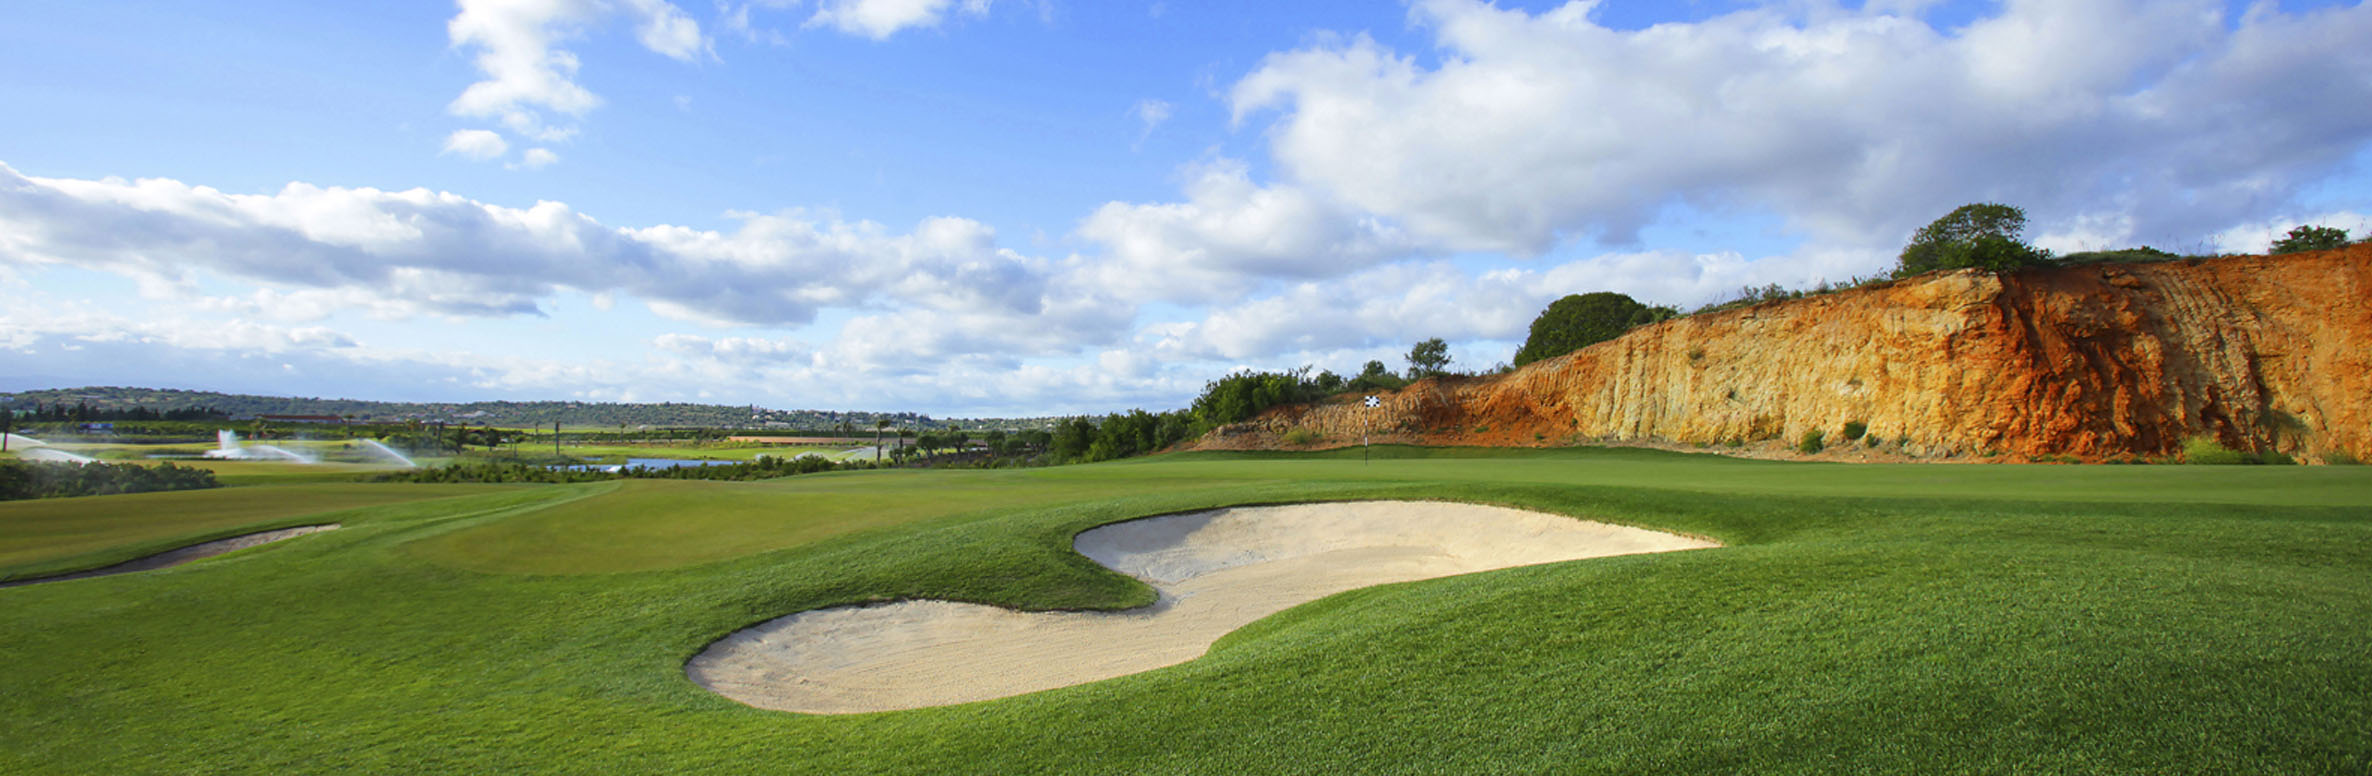 Golf Course Image - Amendoeira Oceãnico O’Connor No. 14